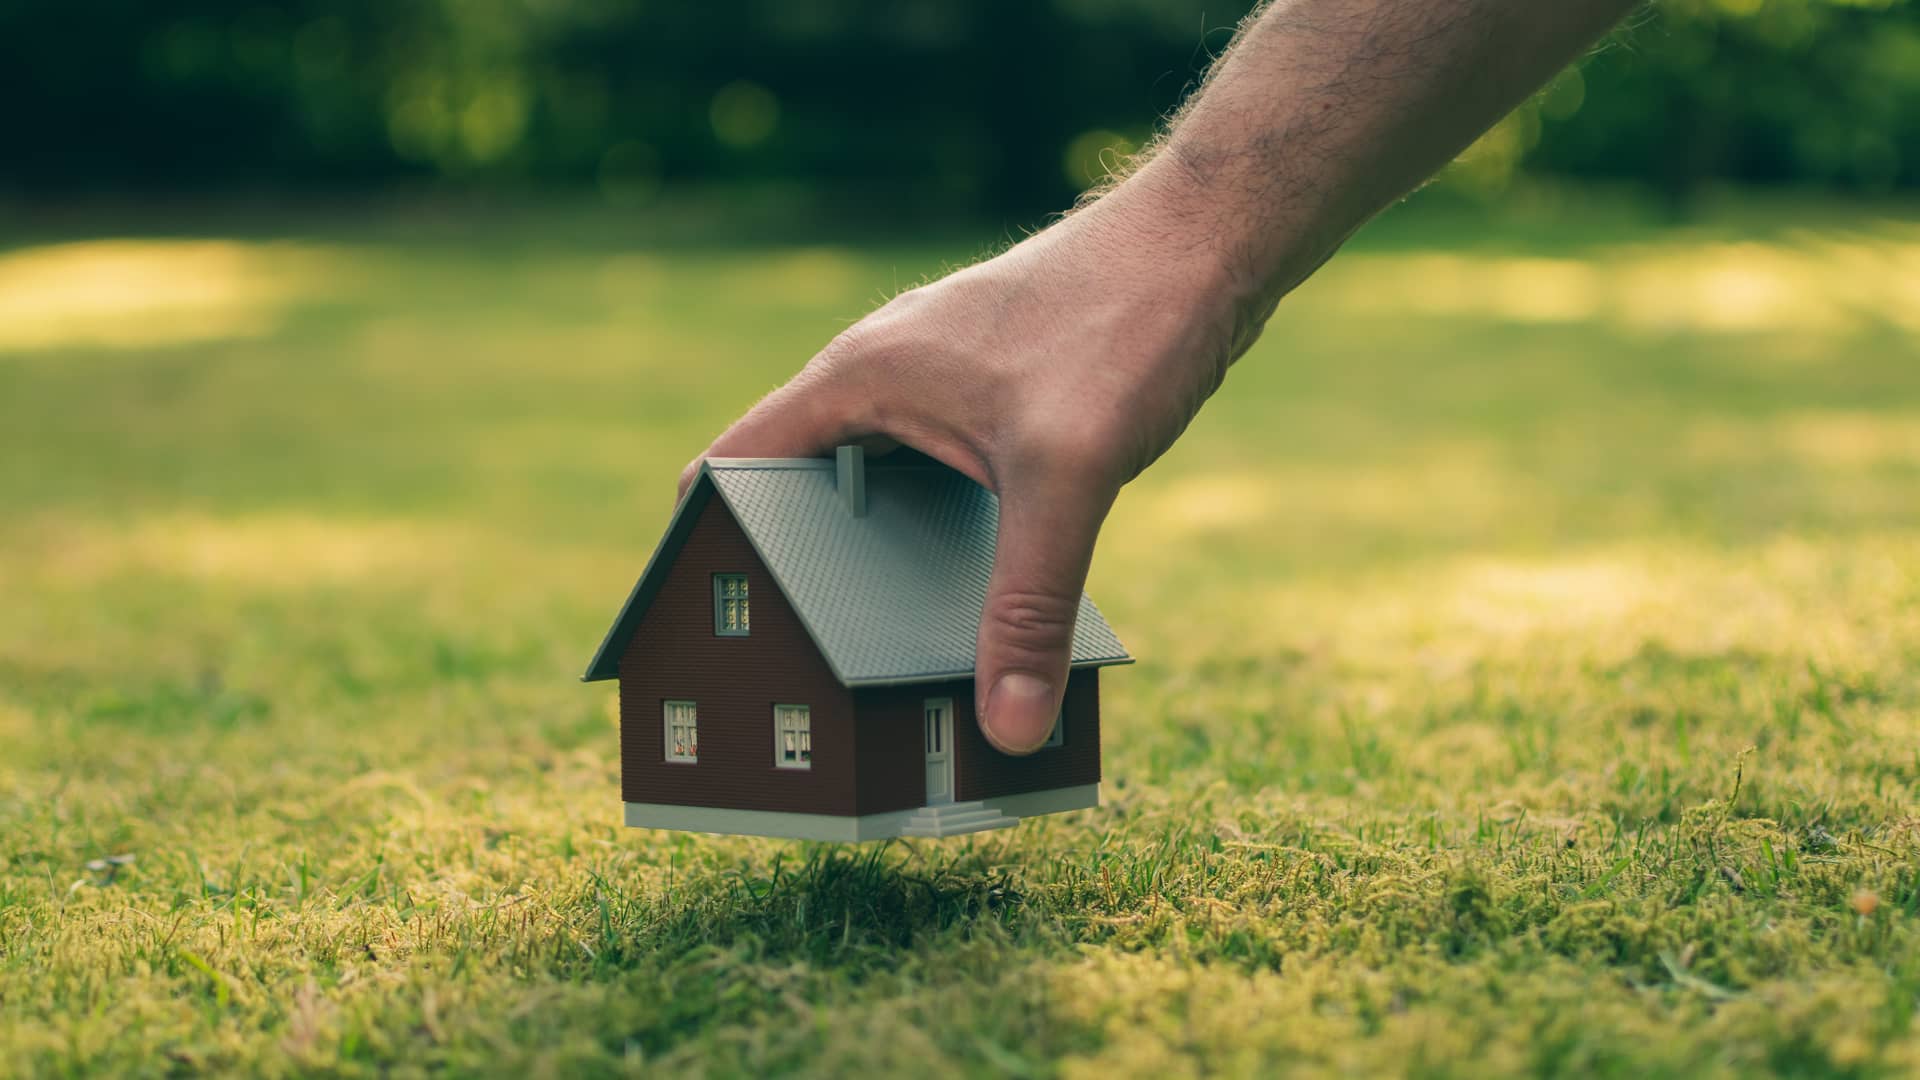 Persona colocando la maqueta de una casa sobre un terreno, representando la posiblidad de solicitar una hipoteca para comprar el terreno sobre el que edificar